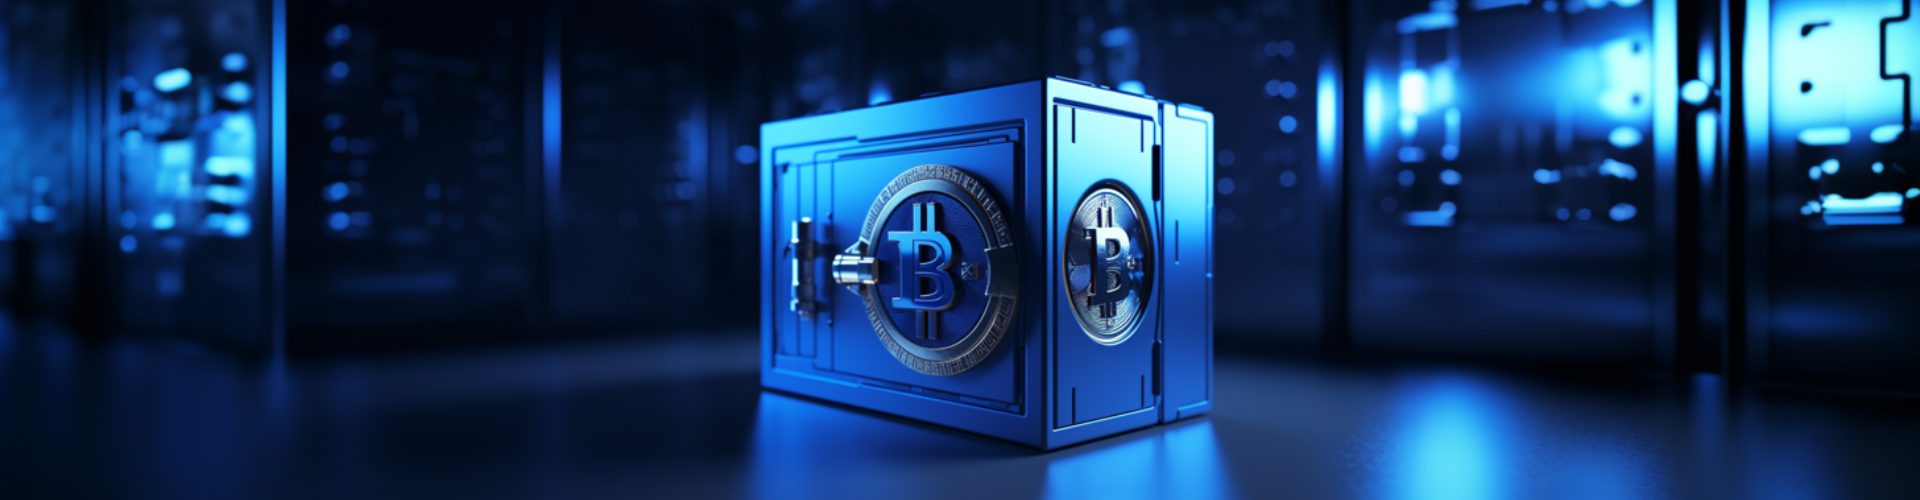 Blue safe in high tech environment with a bitcoin logo